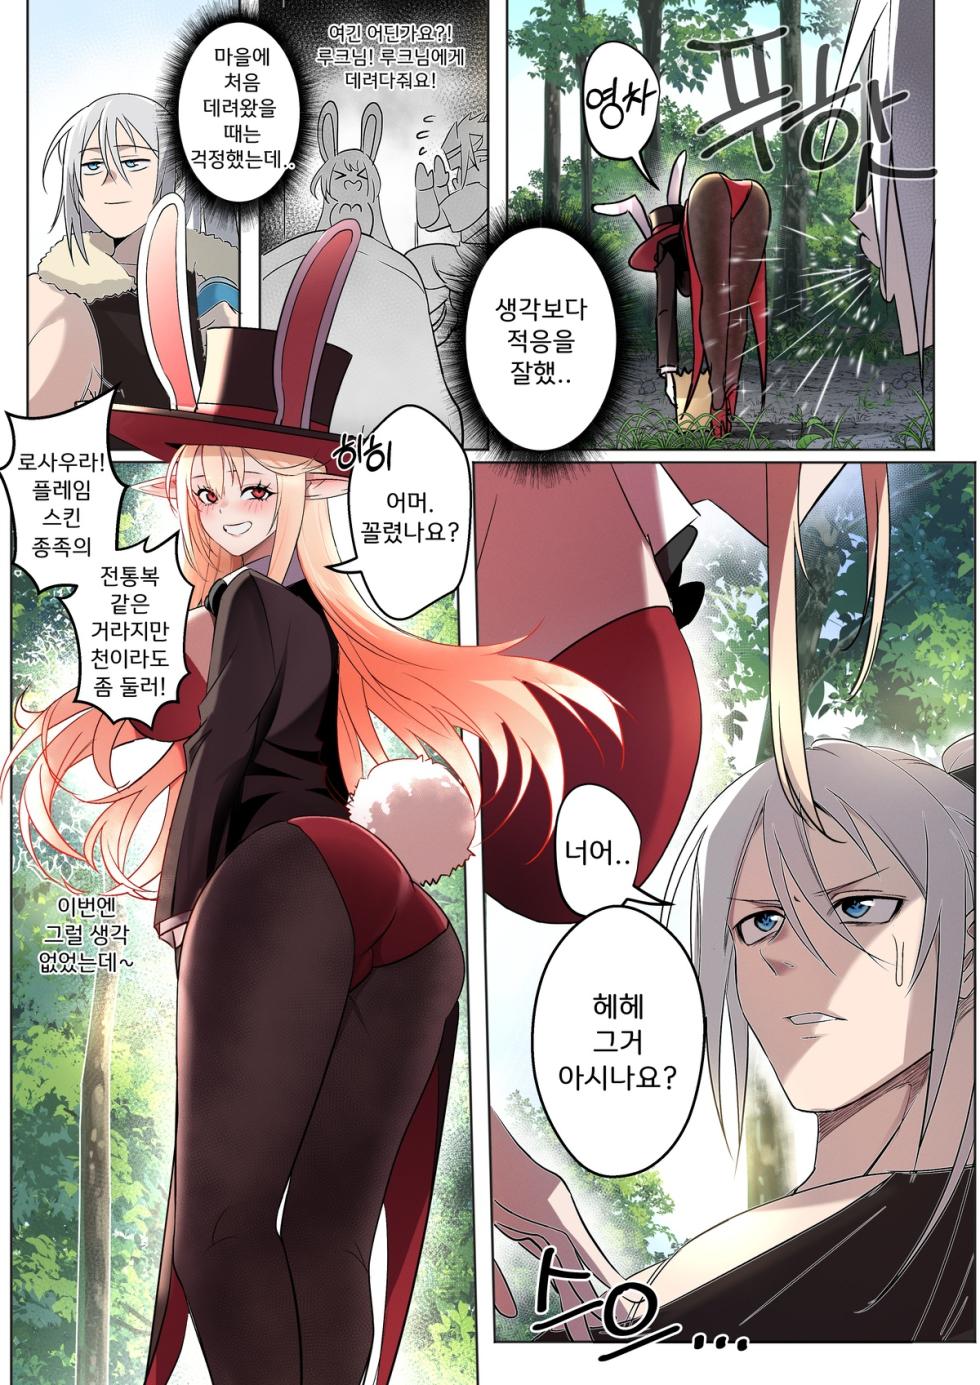 [Fanbox][マンガドッチ]DNF 로사우라 떡인지(DNF Rosaura manga) - Page 3